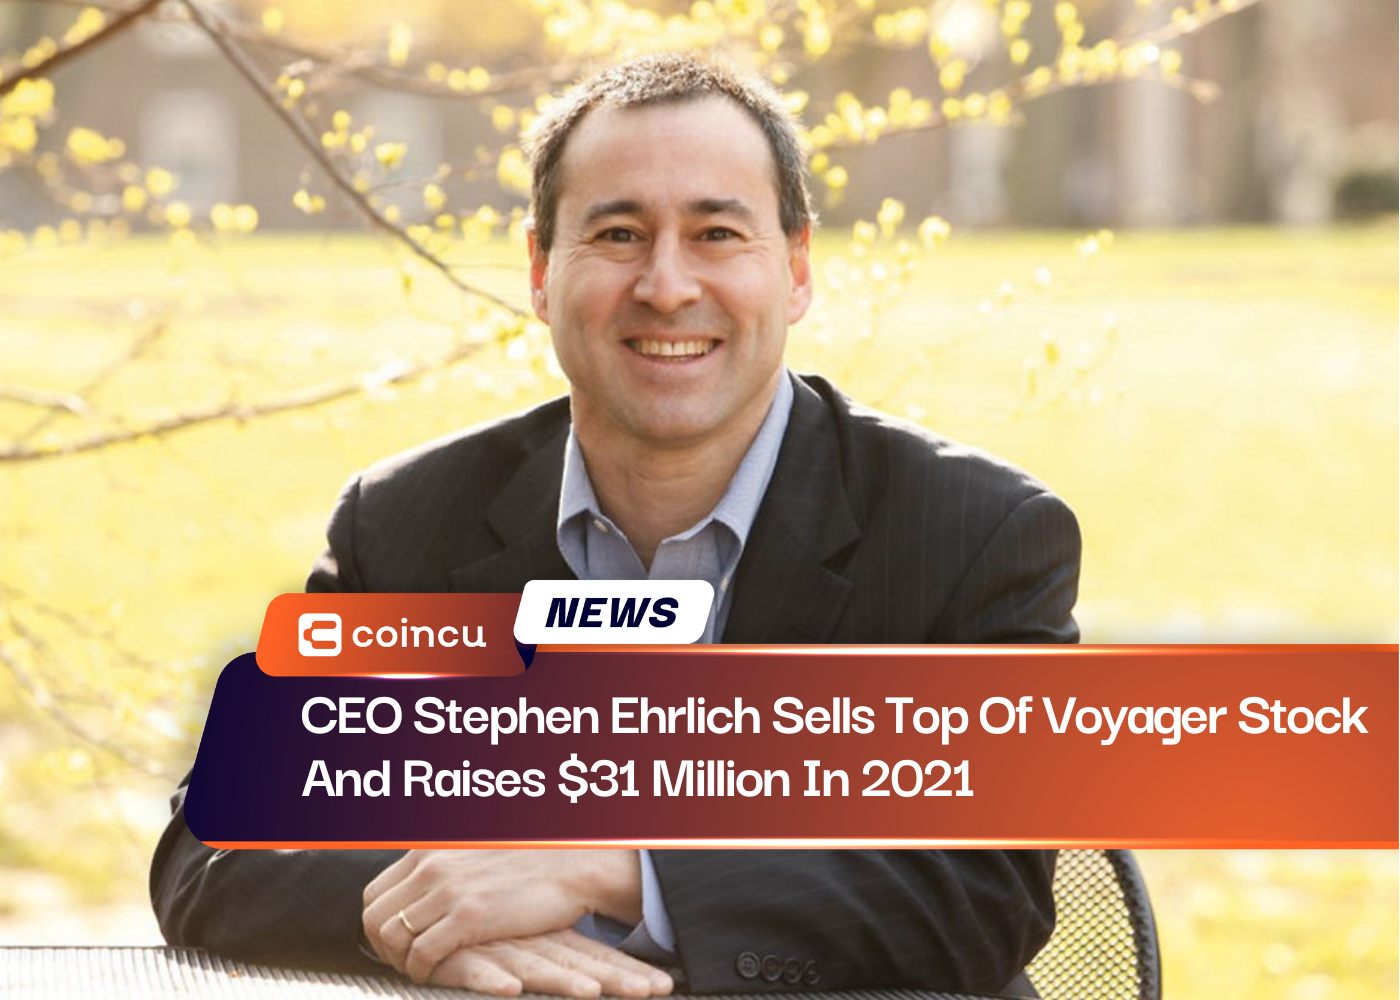 首席执行官 Stephen Ehrlich 出售 Voyager 大部分股票并在 31 年筹集 2021 万美元